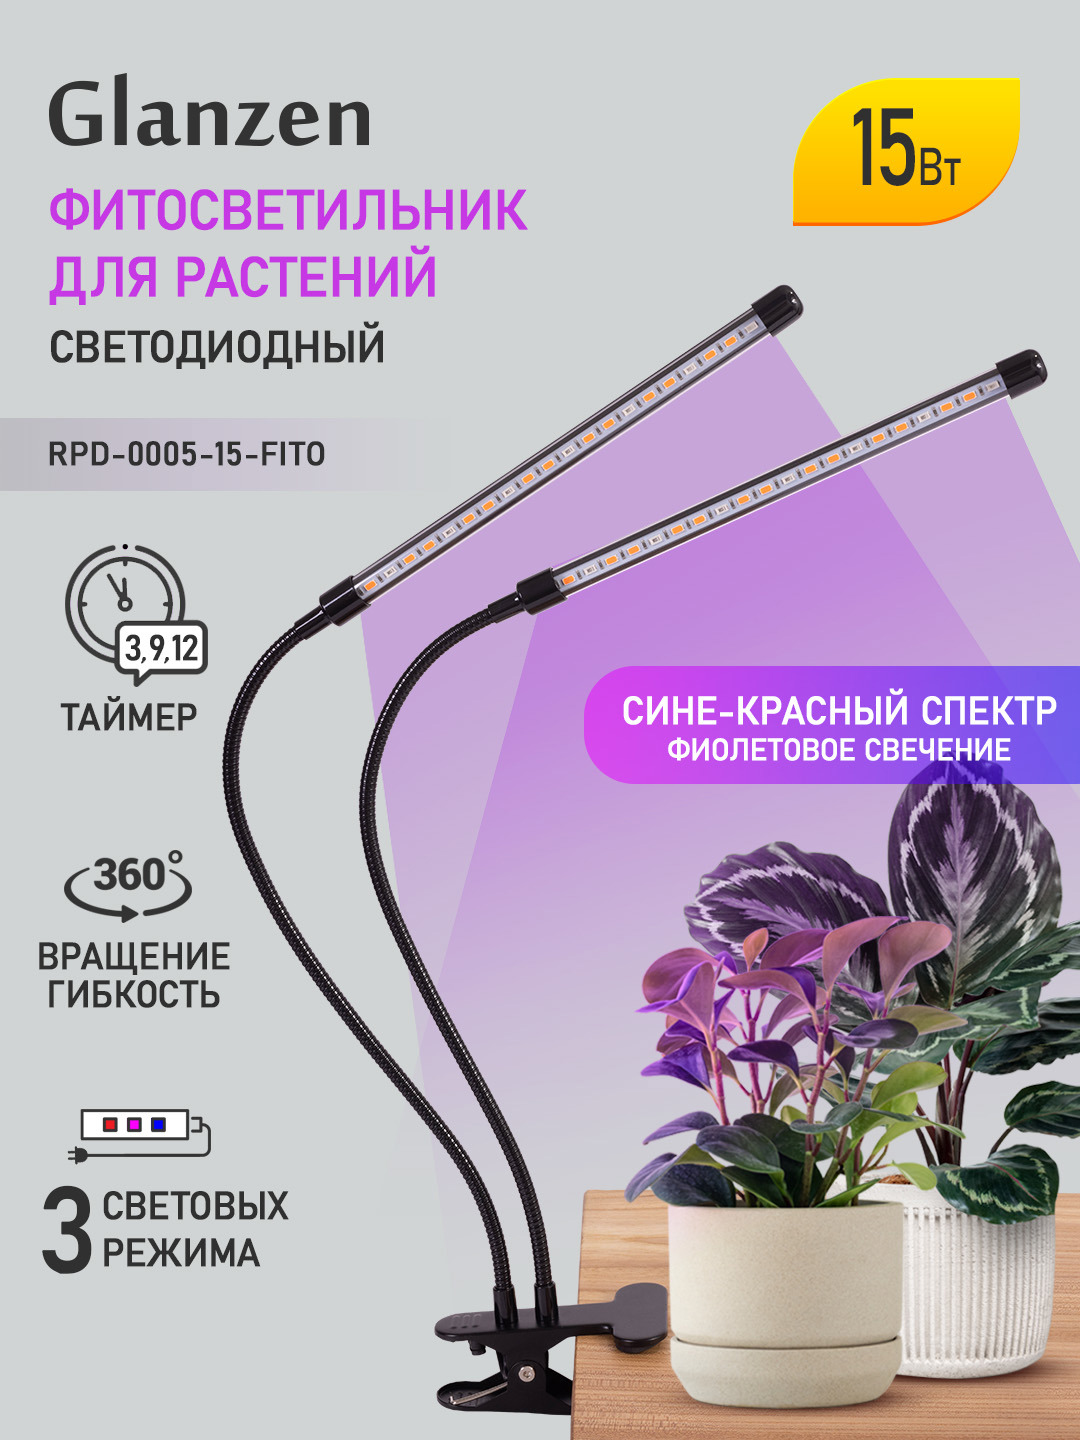 90086299 Фитосветильник светодиодный для растений RPD-0005-15-fito 15 Вт STLM-0106417 GLANZEN